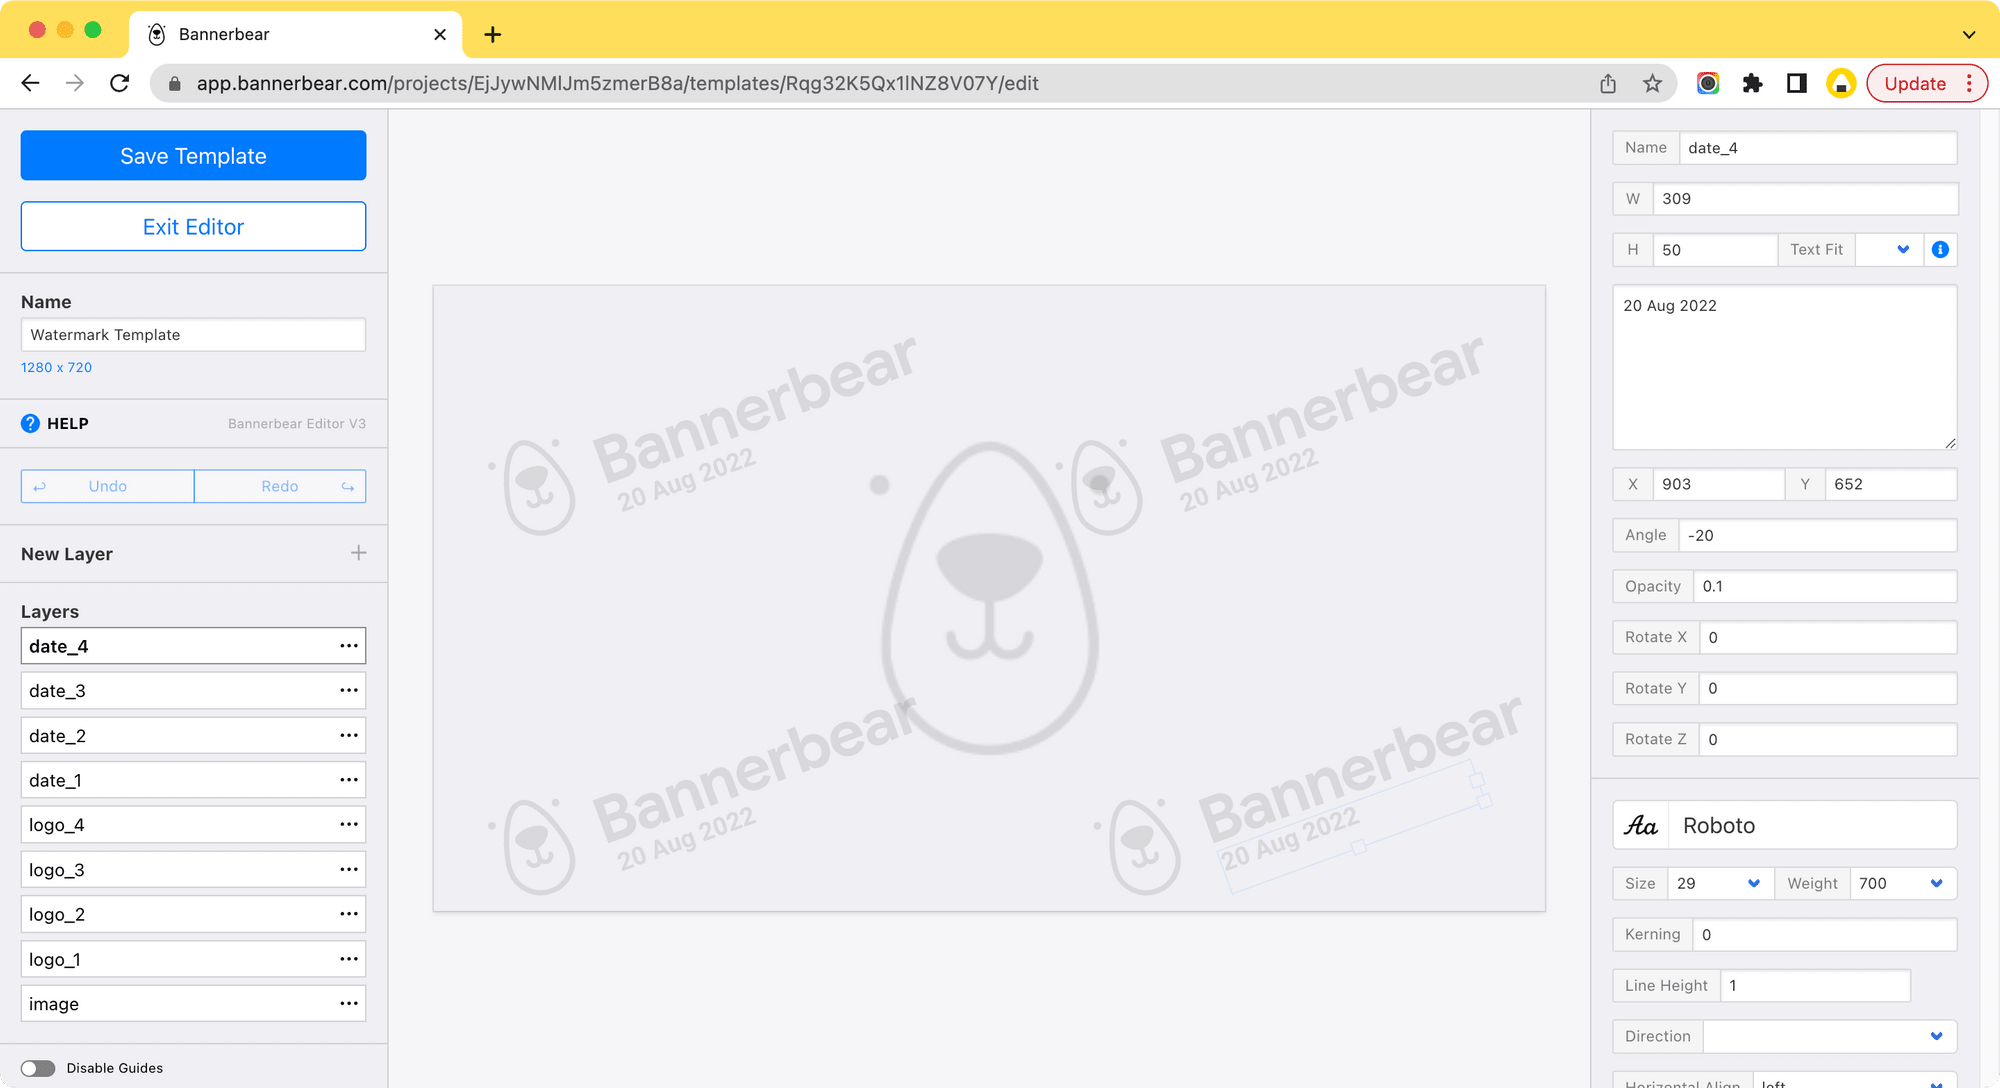 screenshot of creating a new Bannerbear template-2